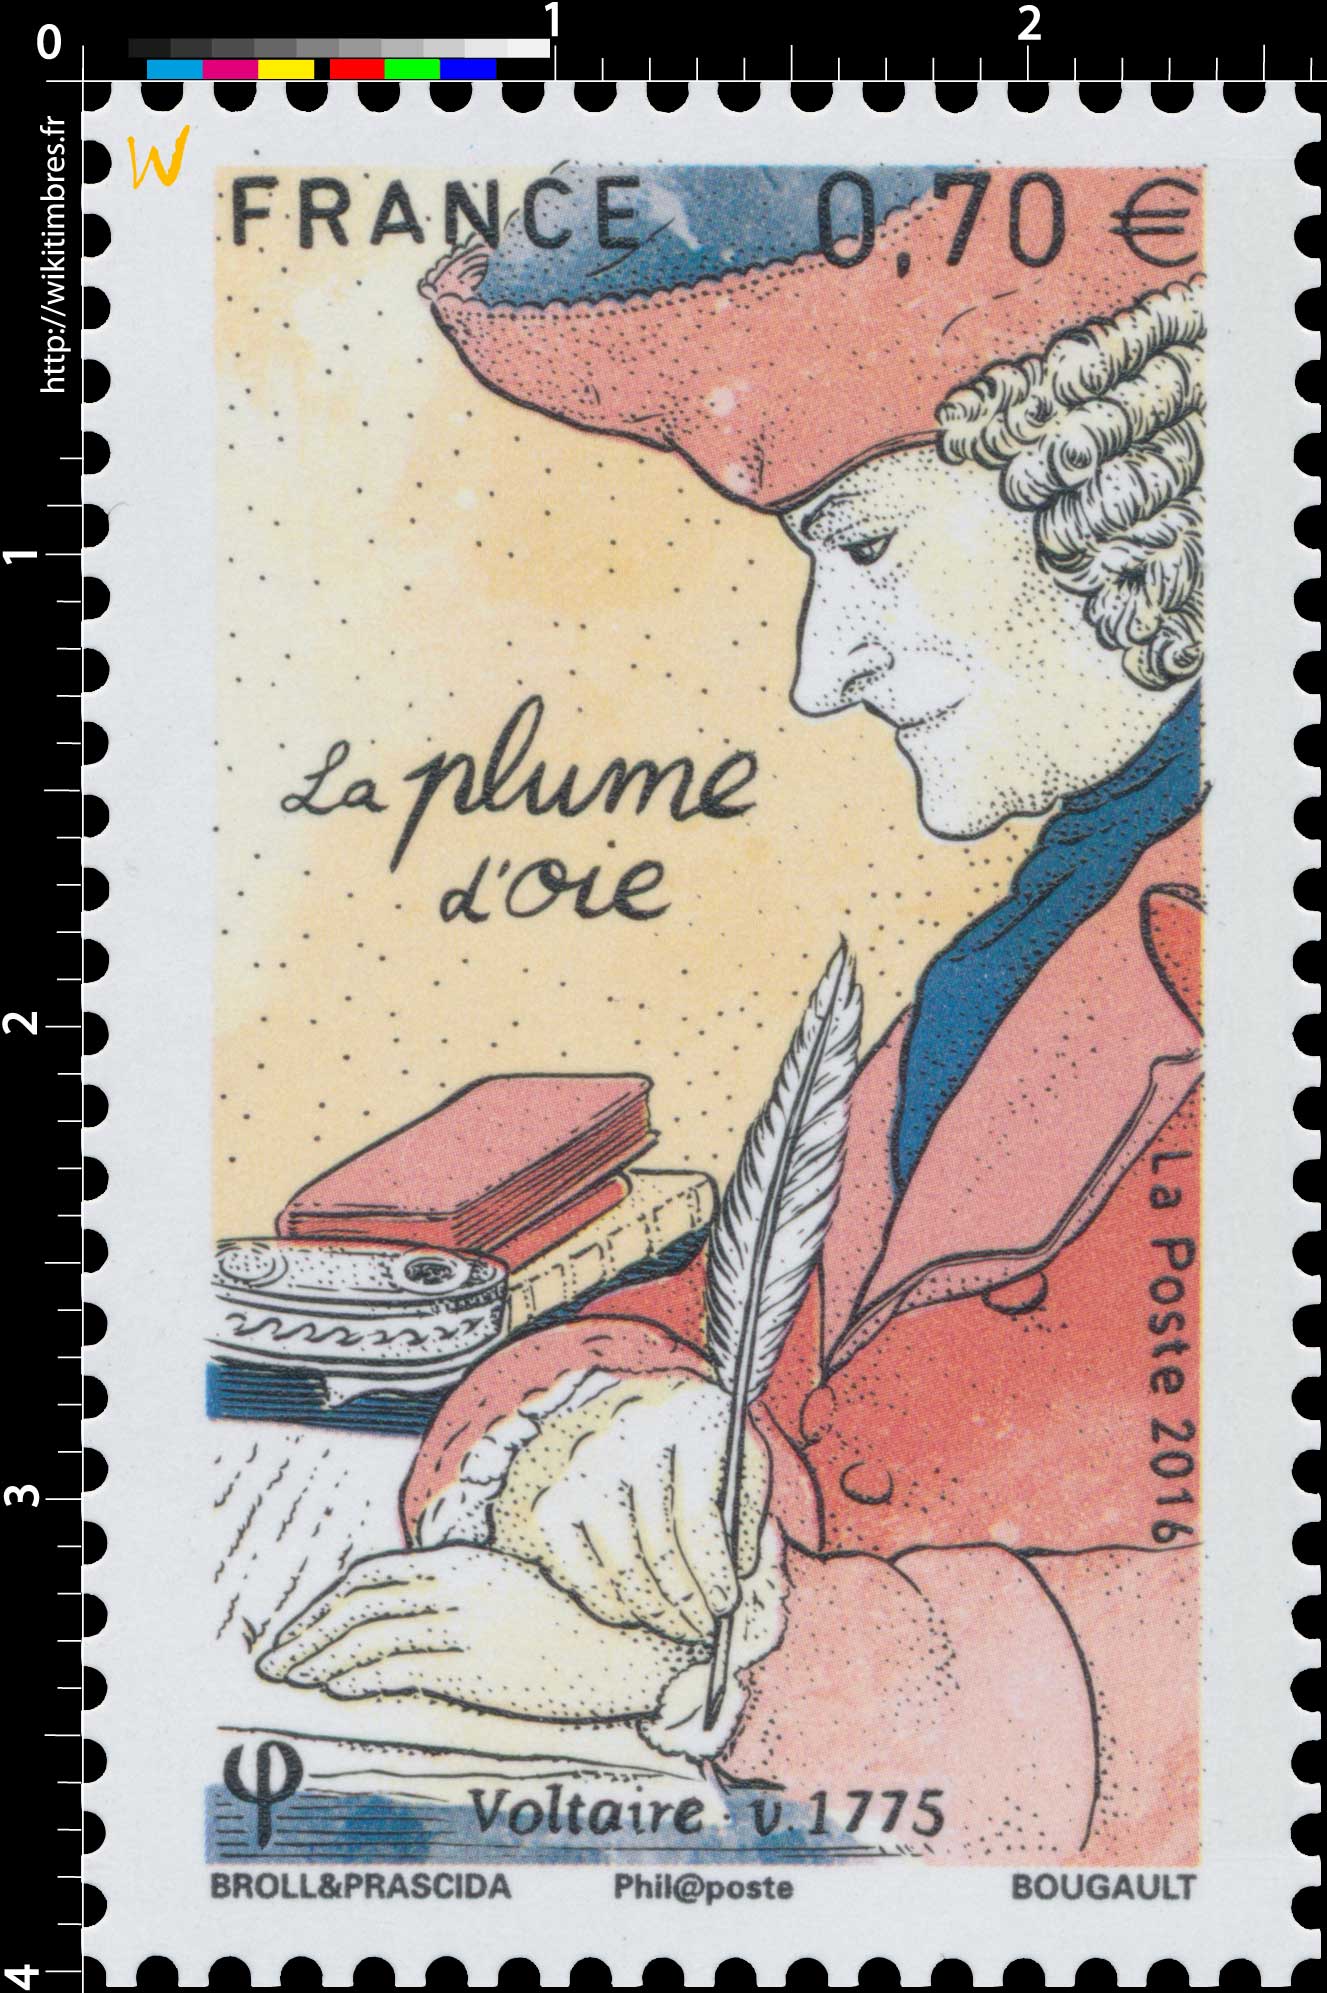 2016 La plume d'oie - Voltaire v.1775